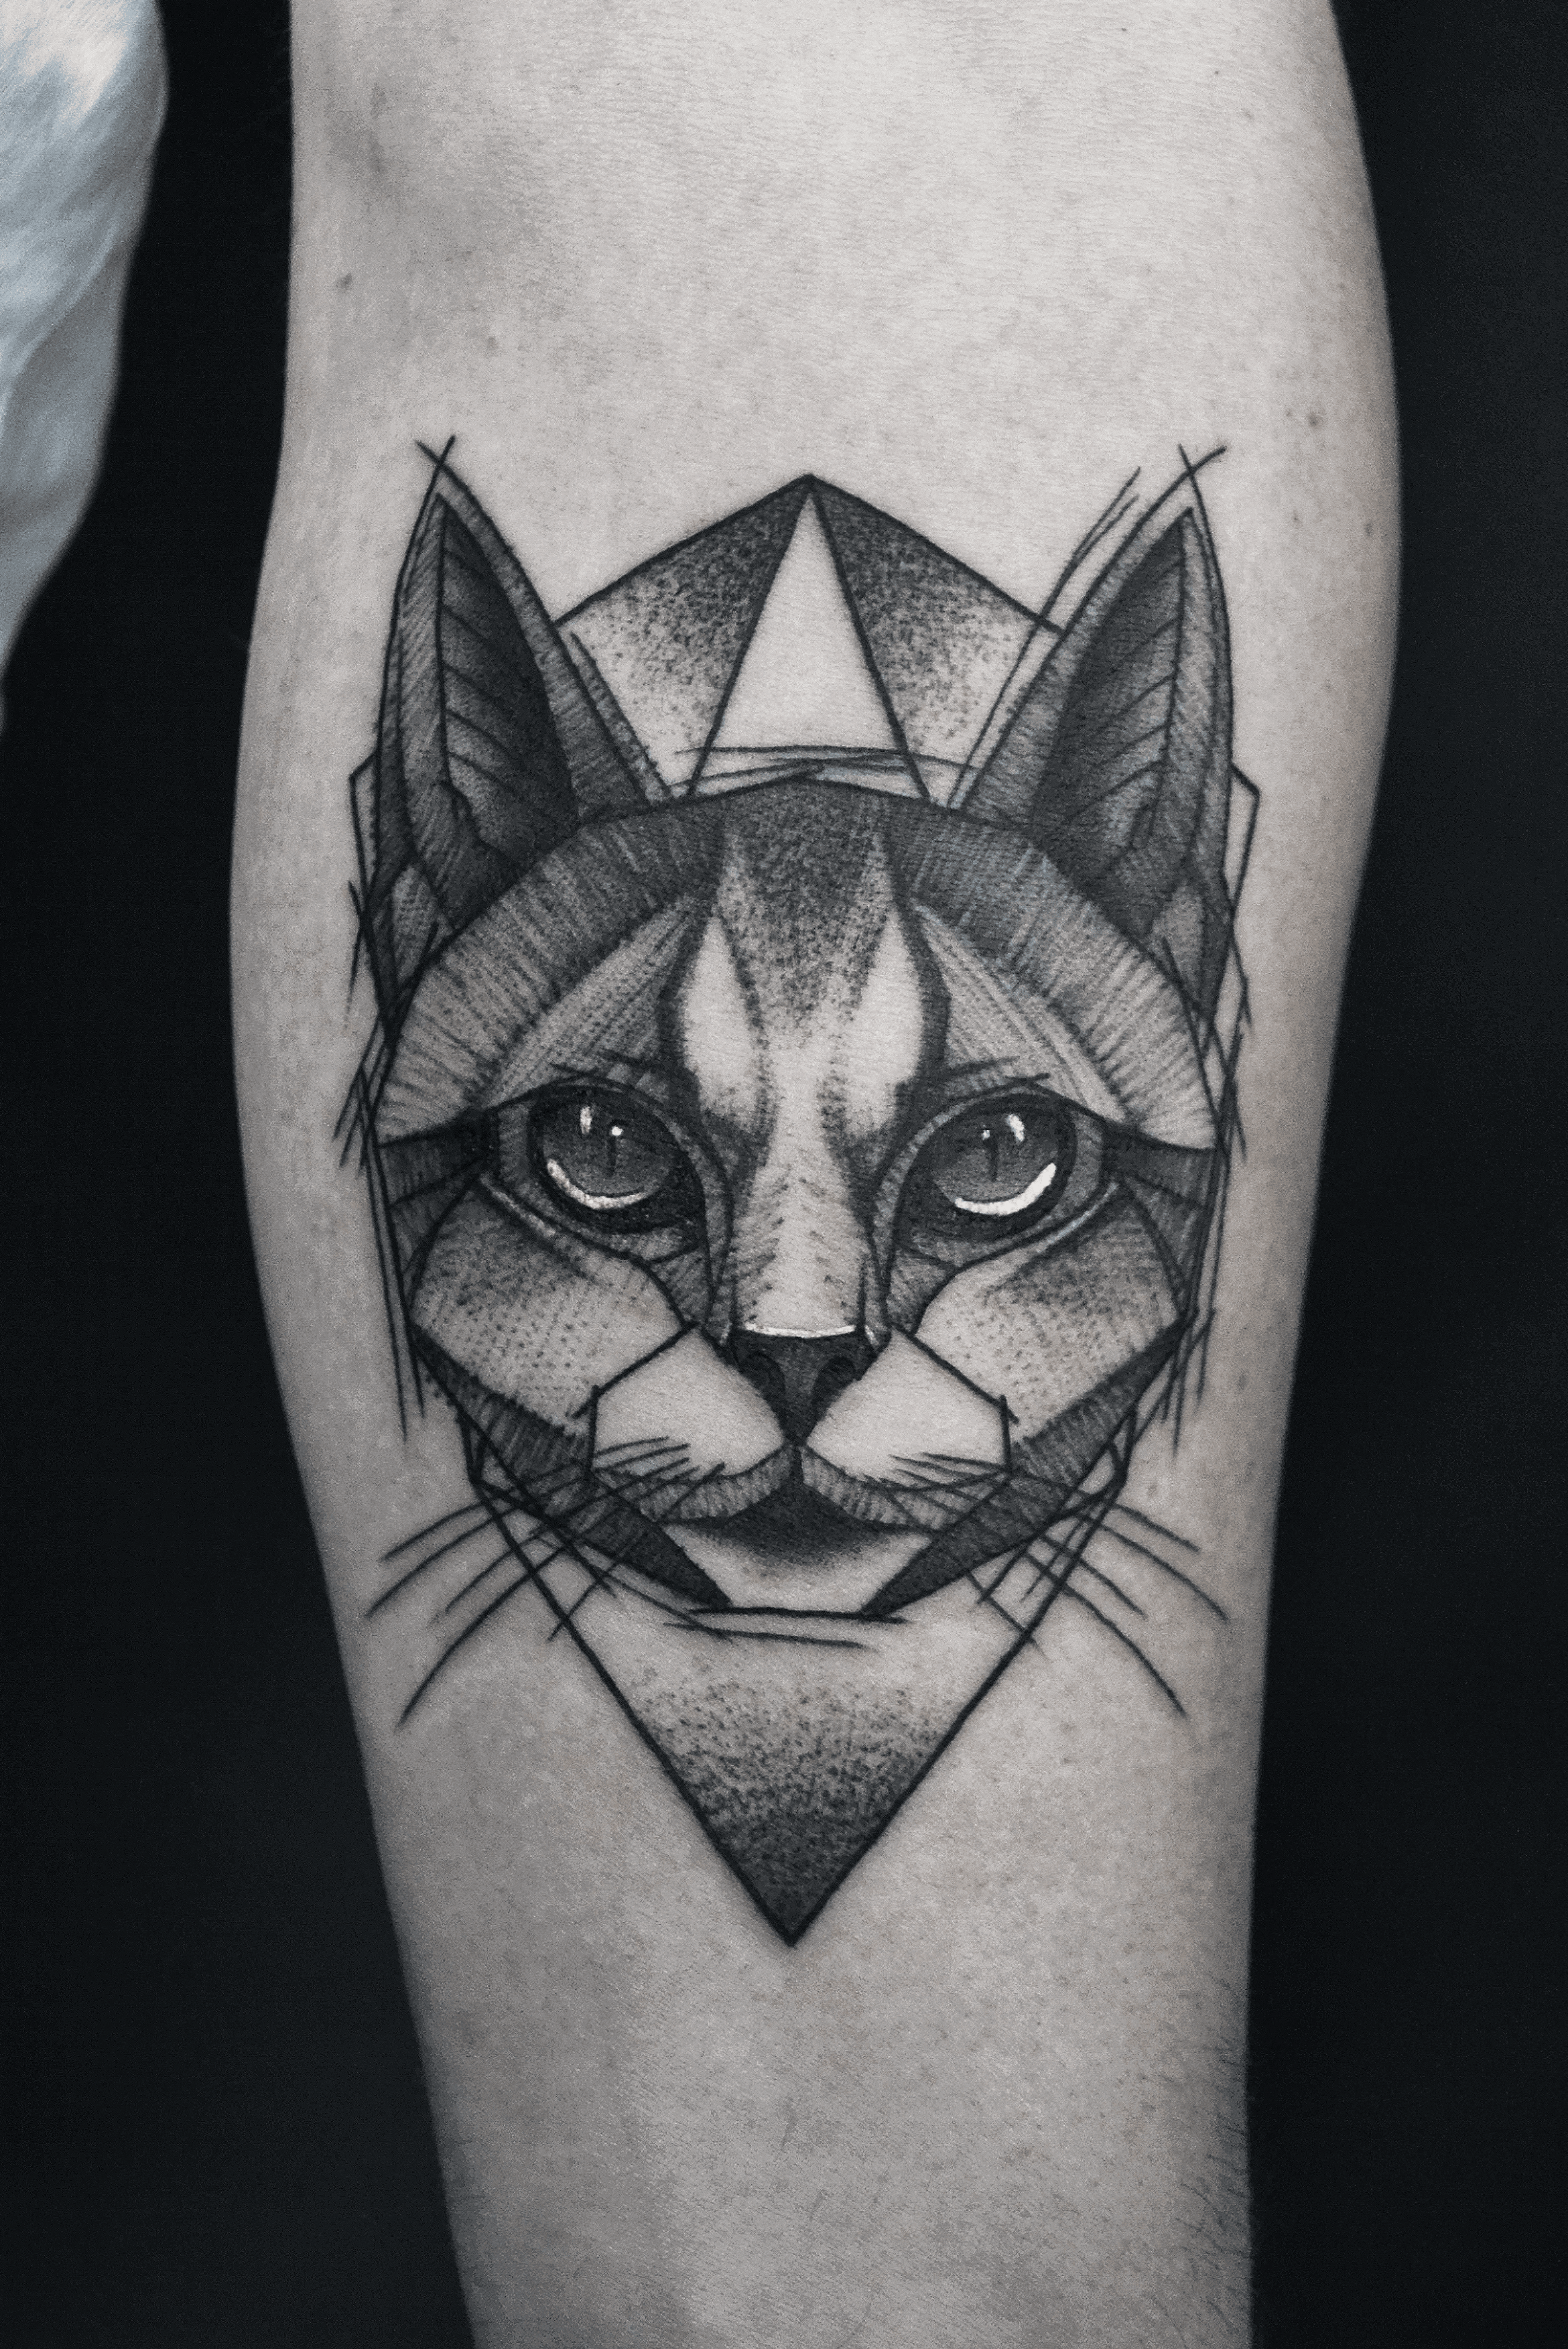 Sketch looking cat tattoo  Black cat tattoos Sketch style tattoos Cat  tattoo designs